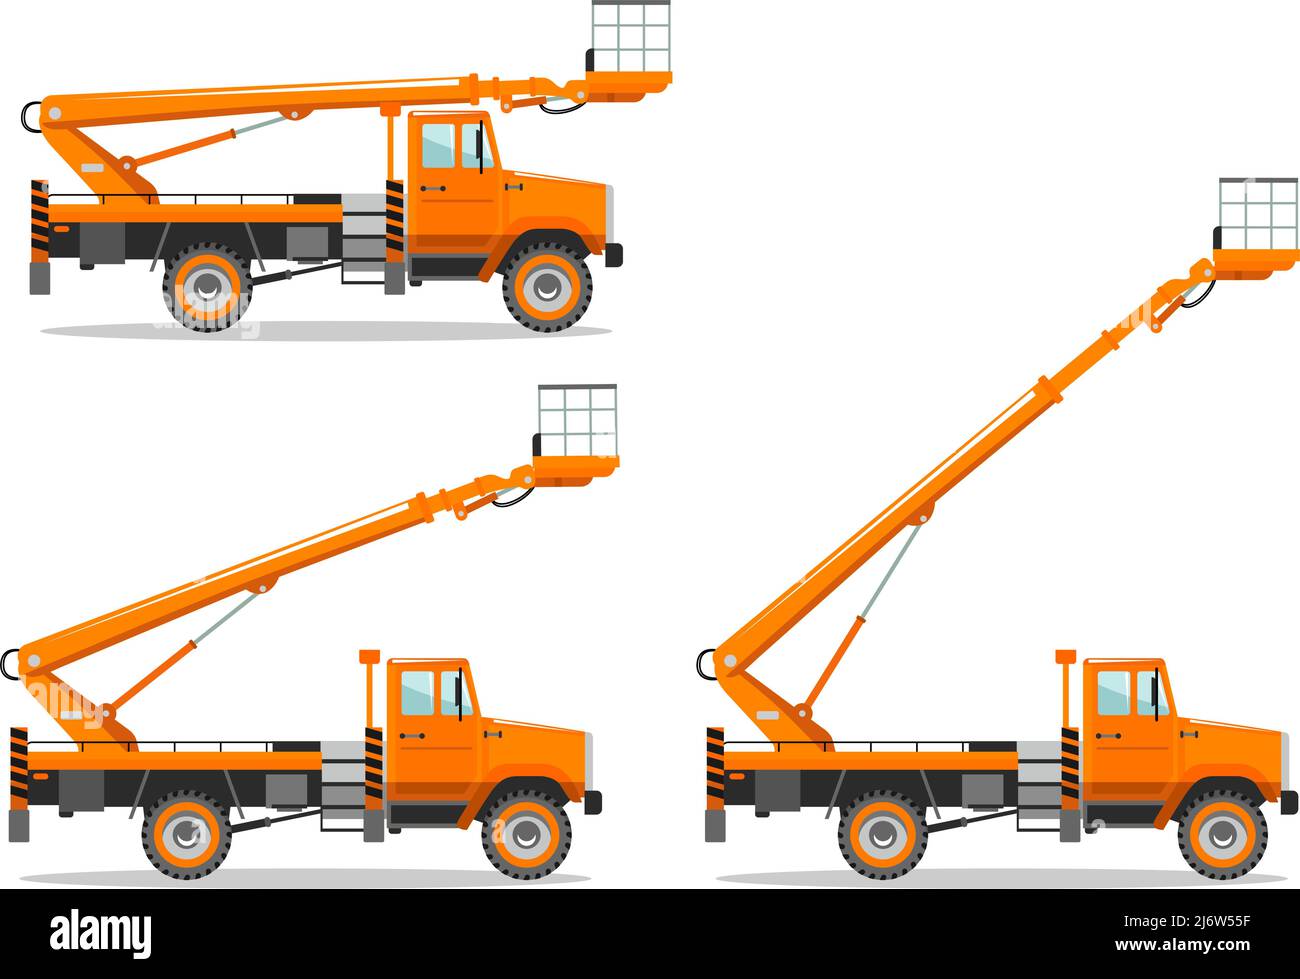 Illustrazione dettagliata del carrello con piattaforma aerea con posizione del braccio diversa. Macchina da costruzione pesante. Attrezzature pesanti e macchinari. Illustrazione Vettoriale